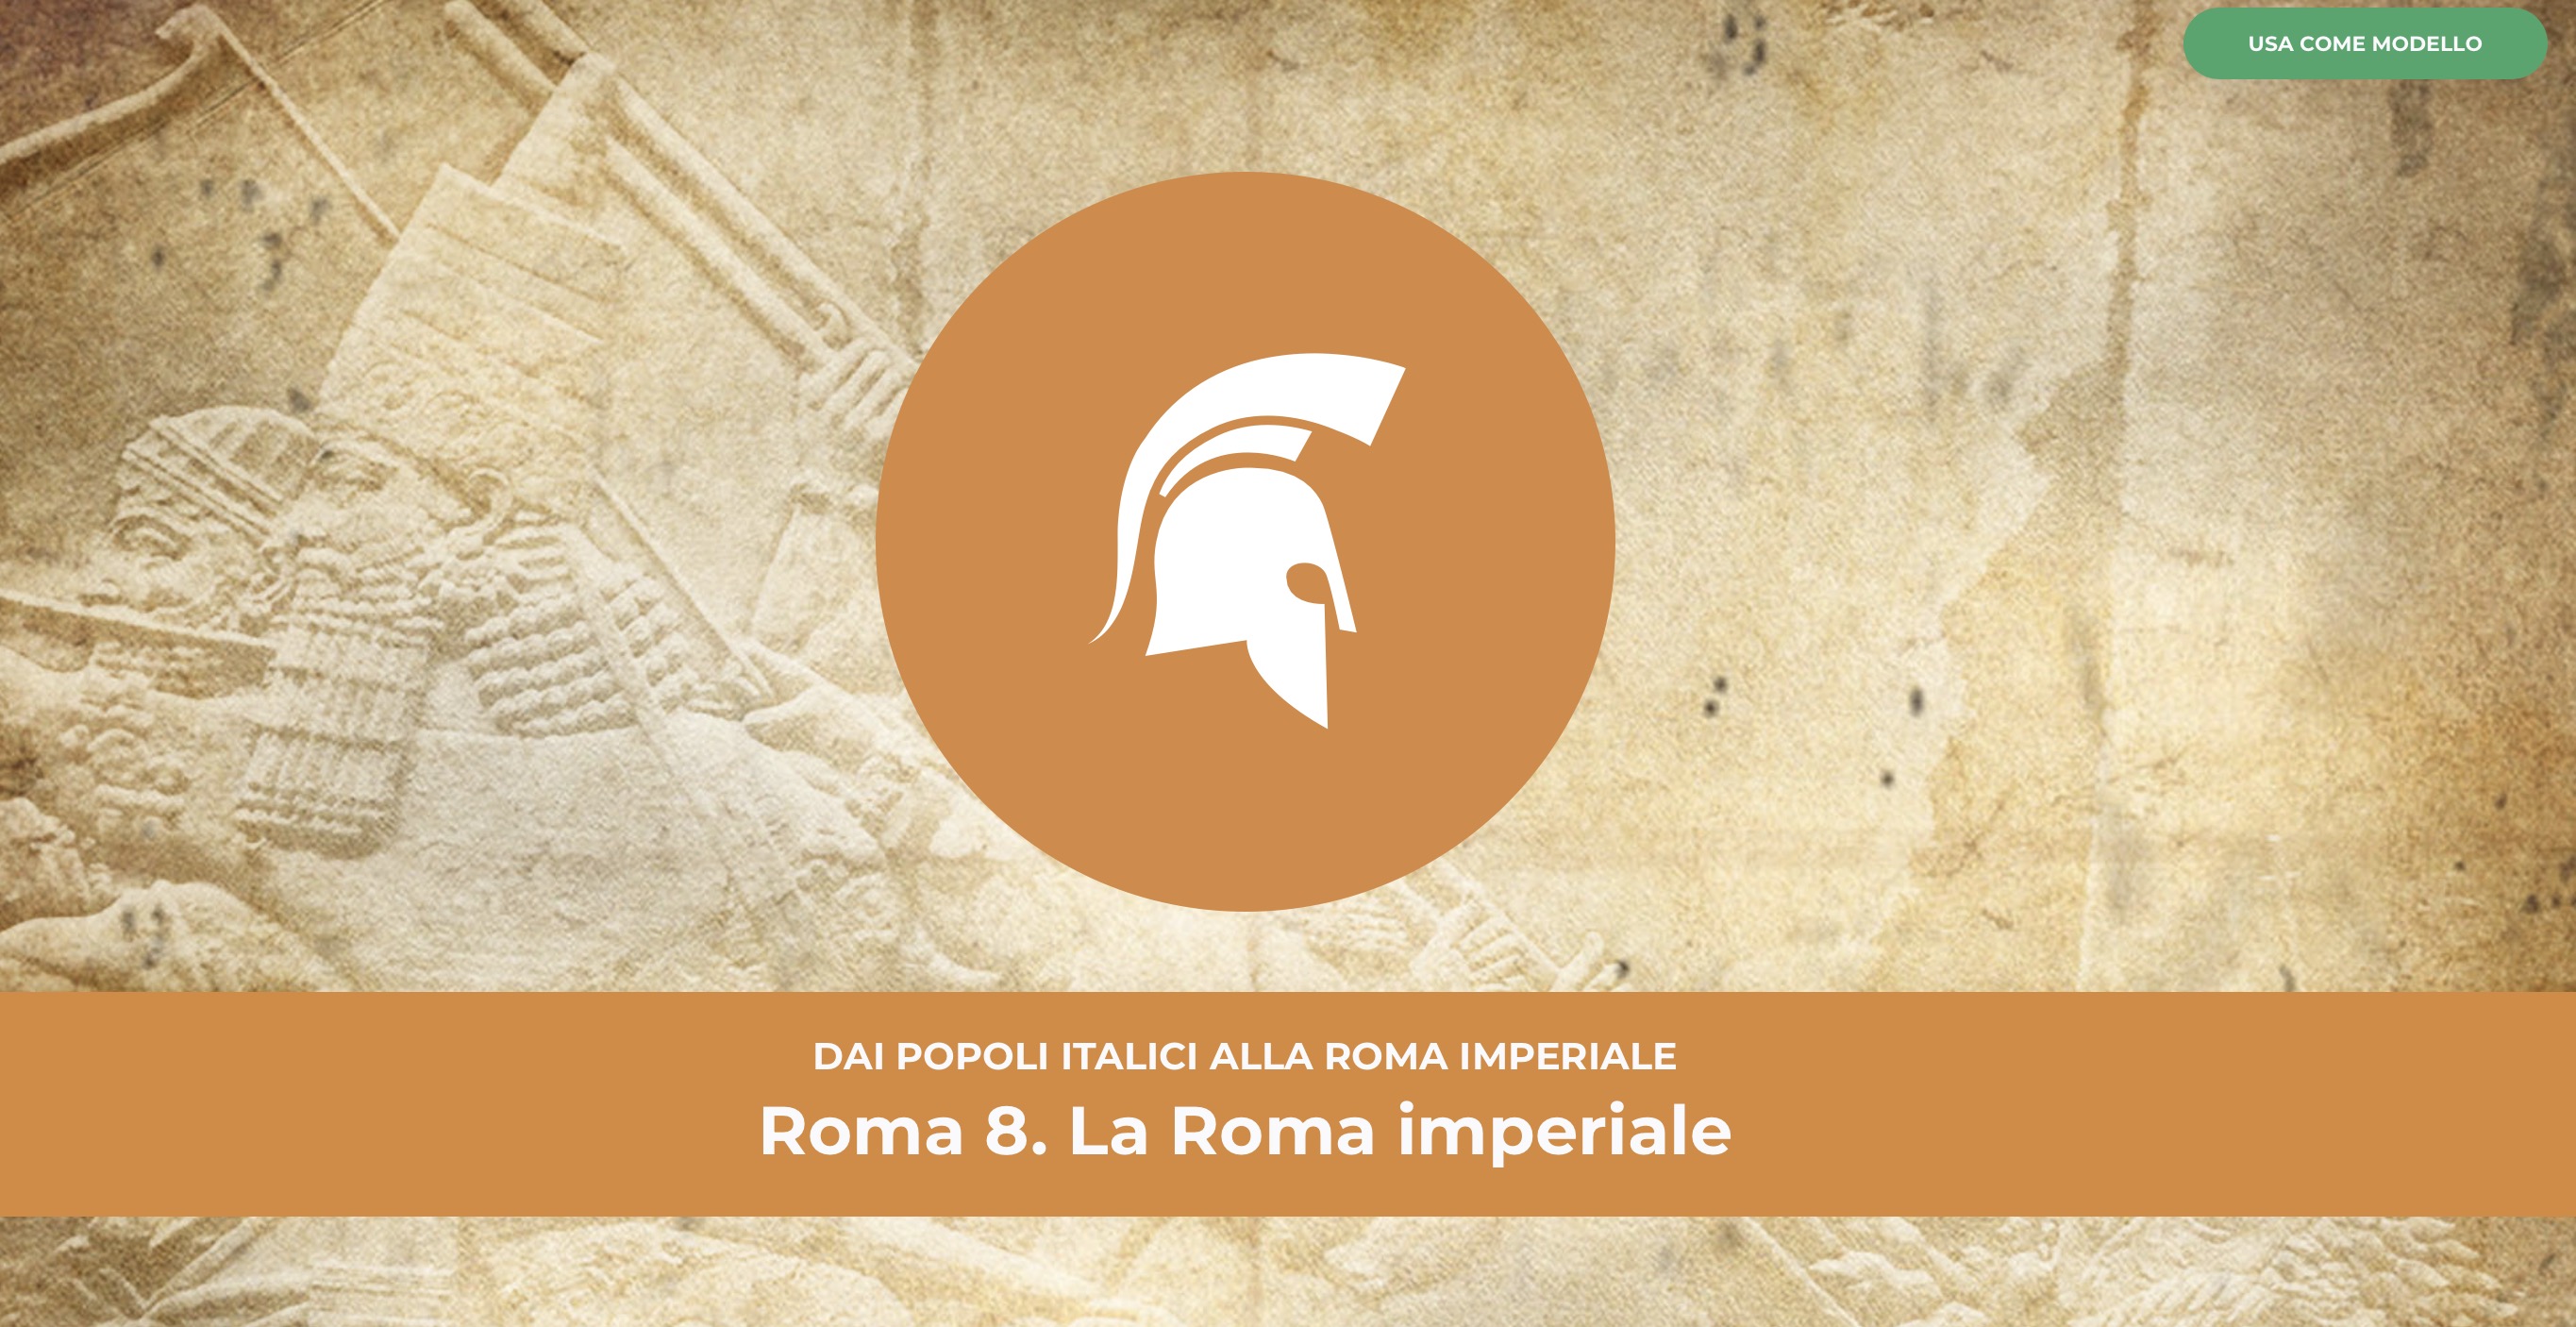 La Roma imperiale